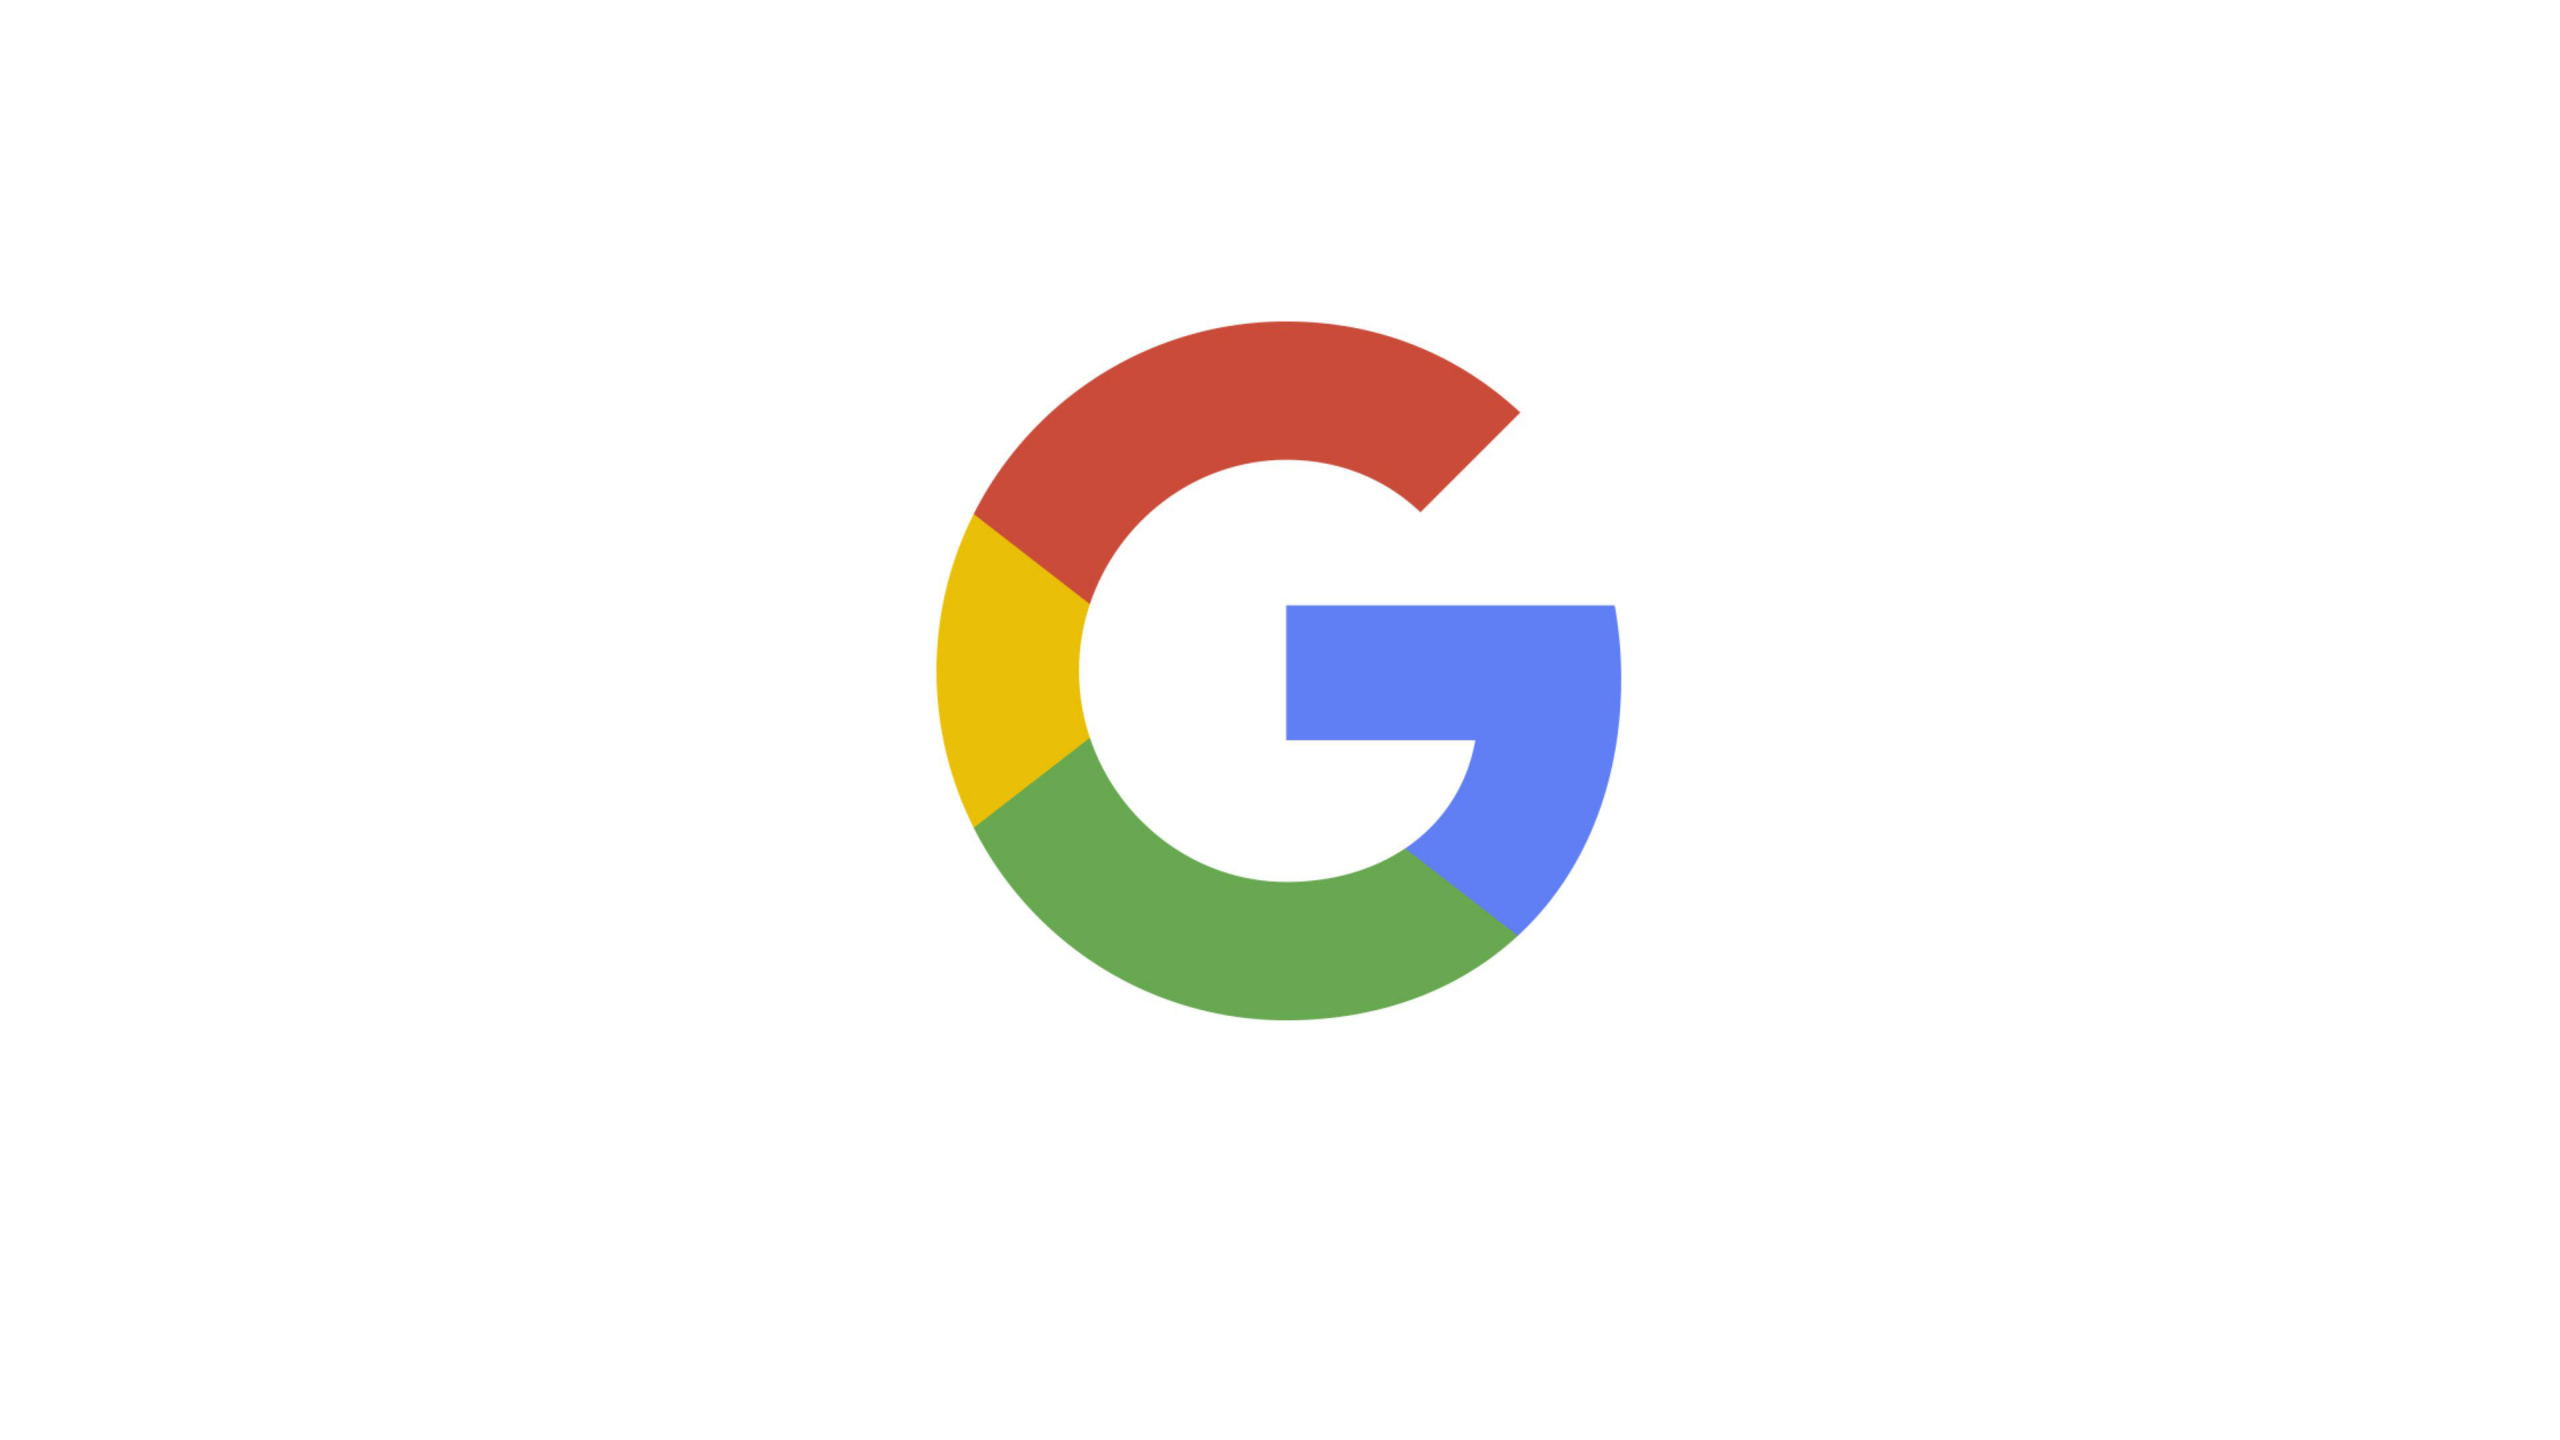 谷歌, 谷歌的标志, 文本, 品牌, 圆圈 壁纸 2560x1440 允许